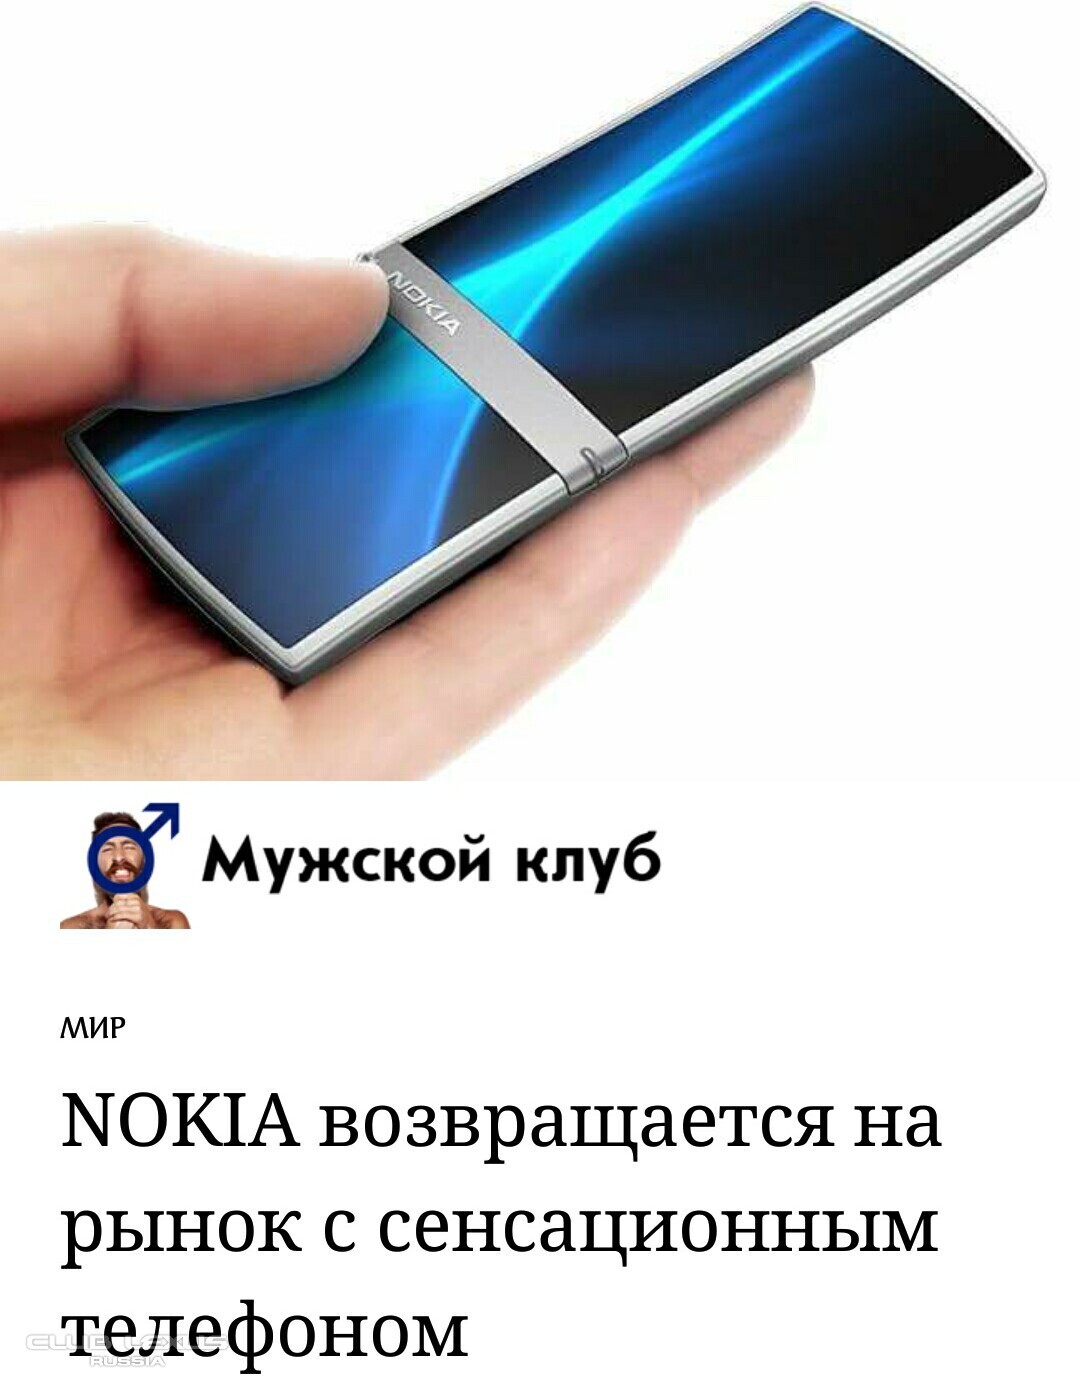 Nokia Aeon 2017